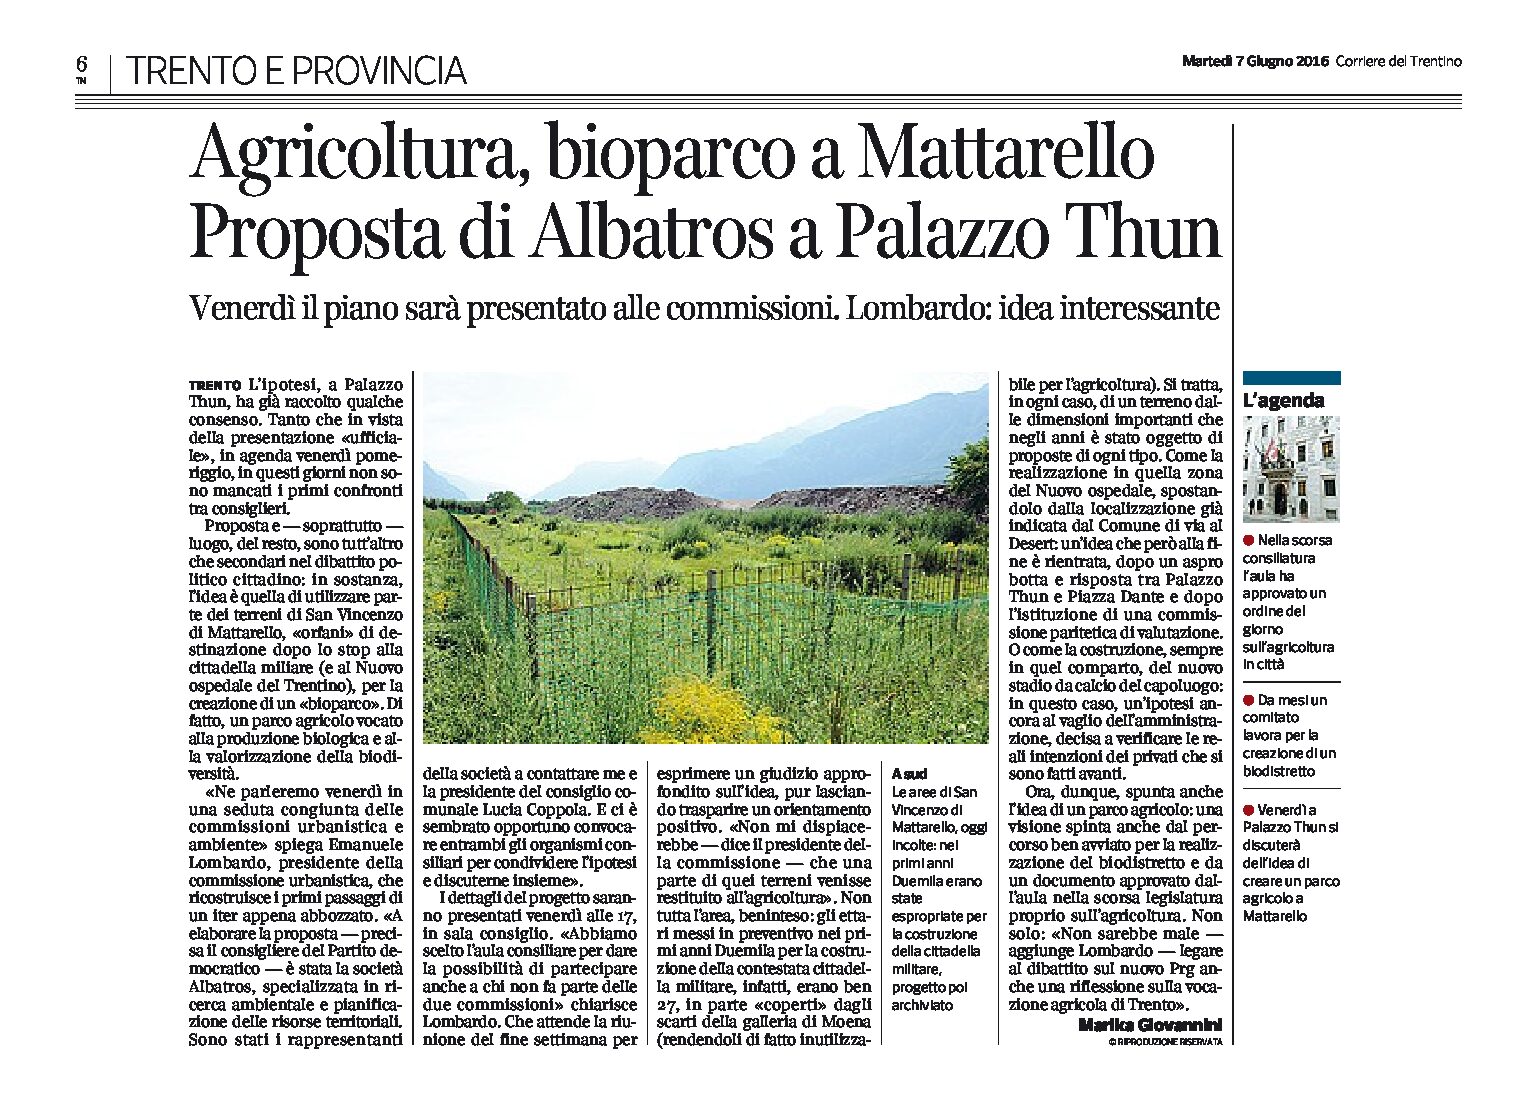 Mattarello: Agricoltura, bioparco. Proposta di Albatros a Palazzo Thun